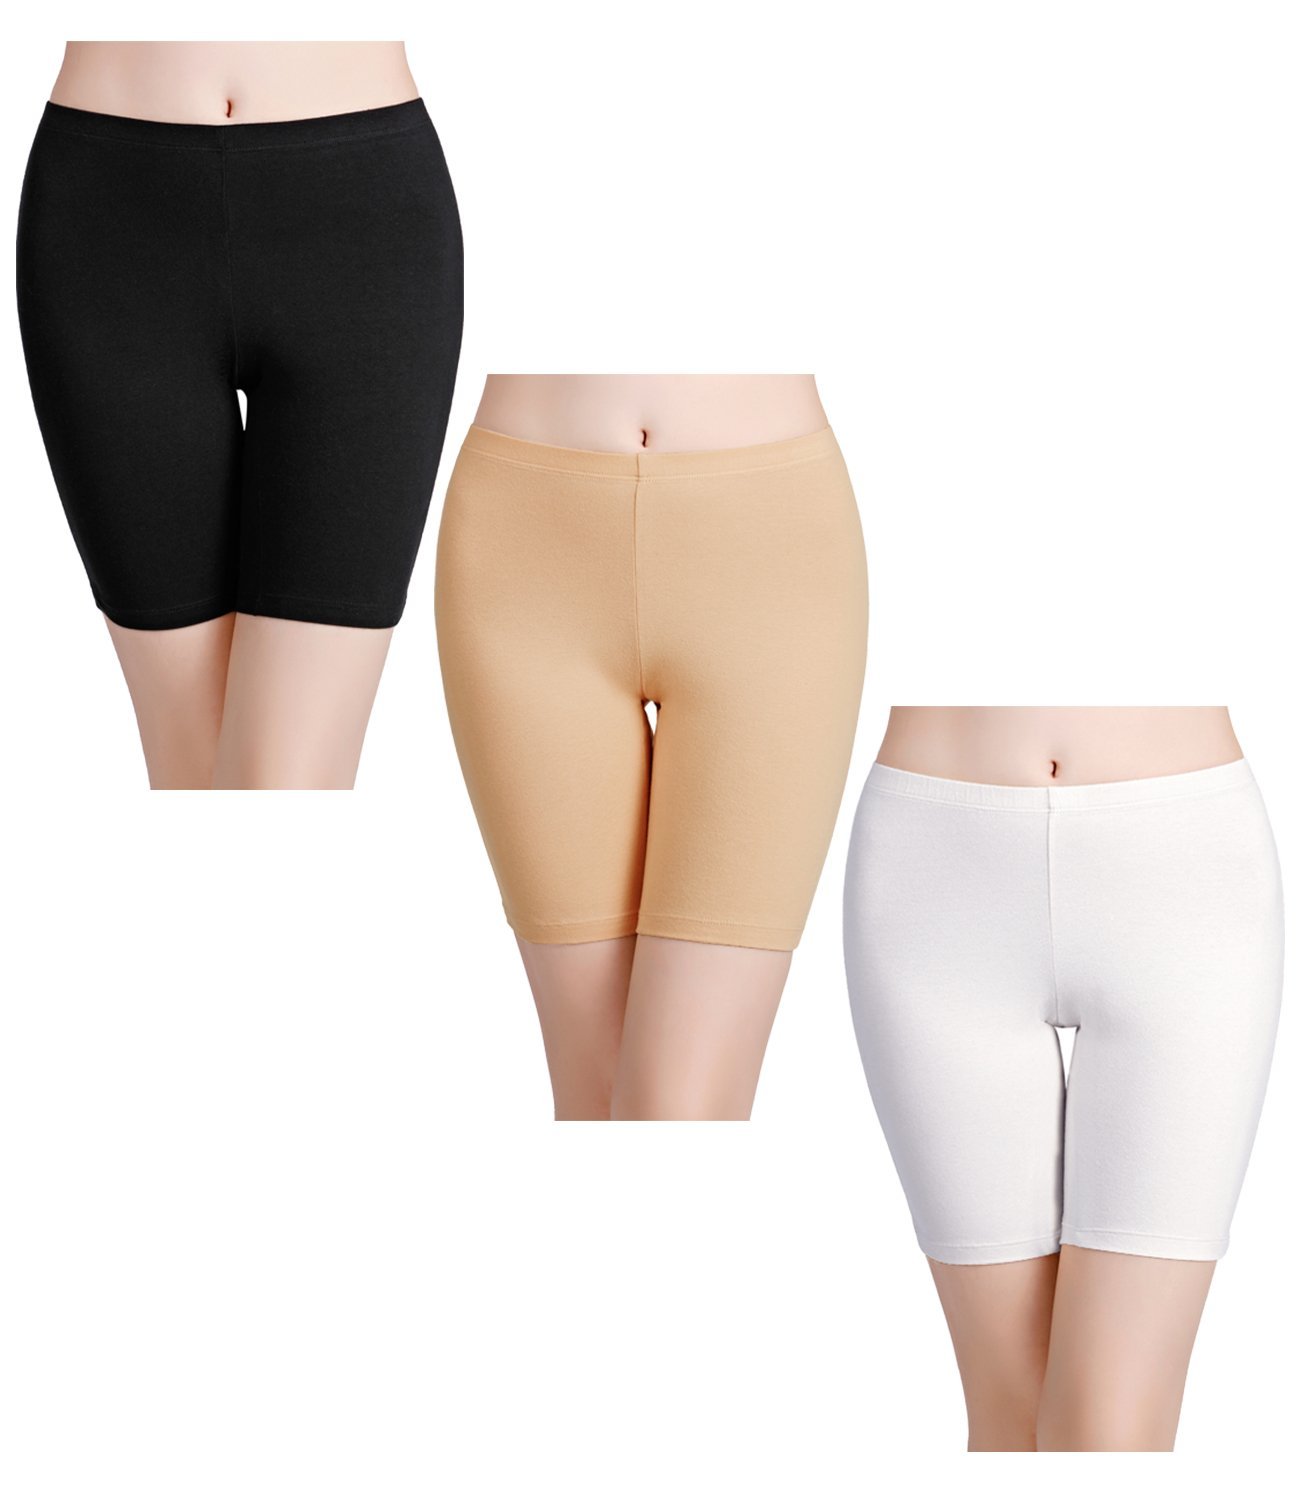 wirarpa Women's Cotton Boxer Briefs Underwear Boy Shorts 3″ Inseam 4  Pack(Mint/Light Orange/Yellow/Pink) - wirarpa